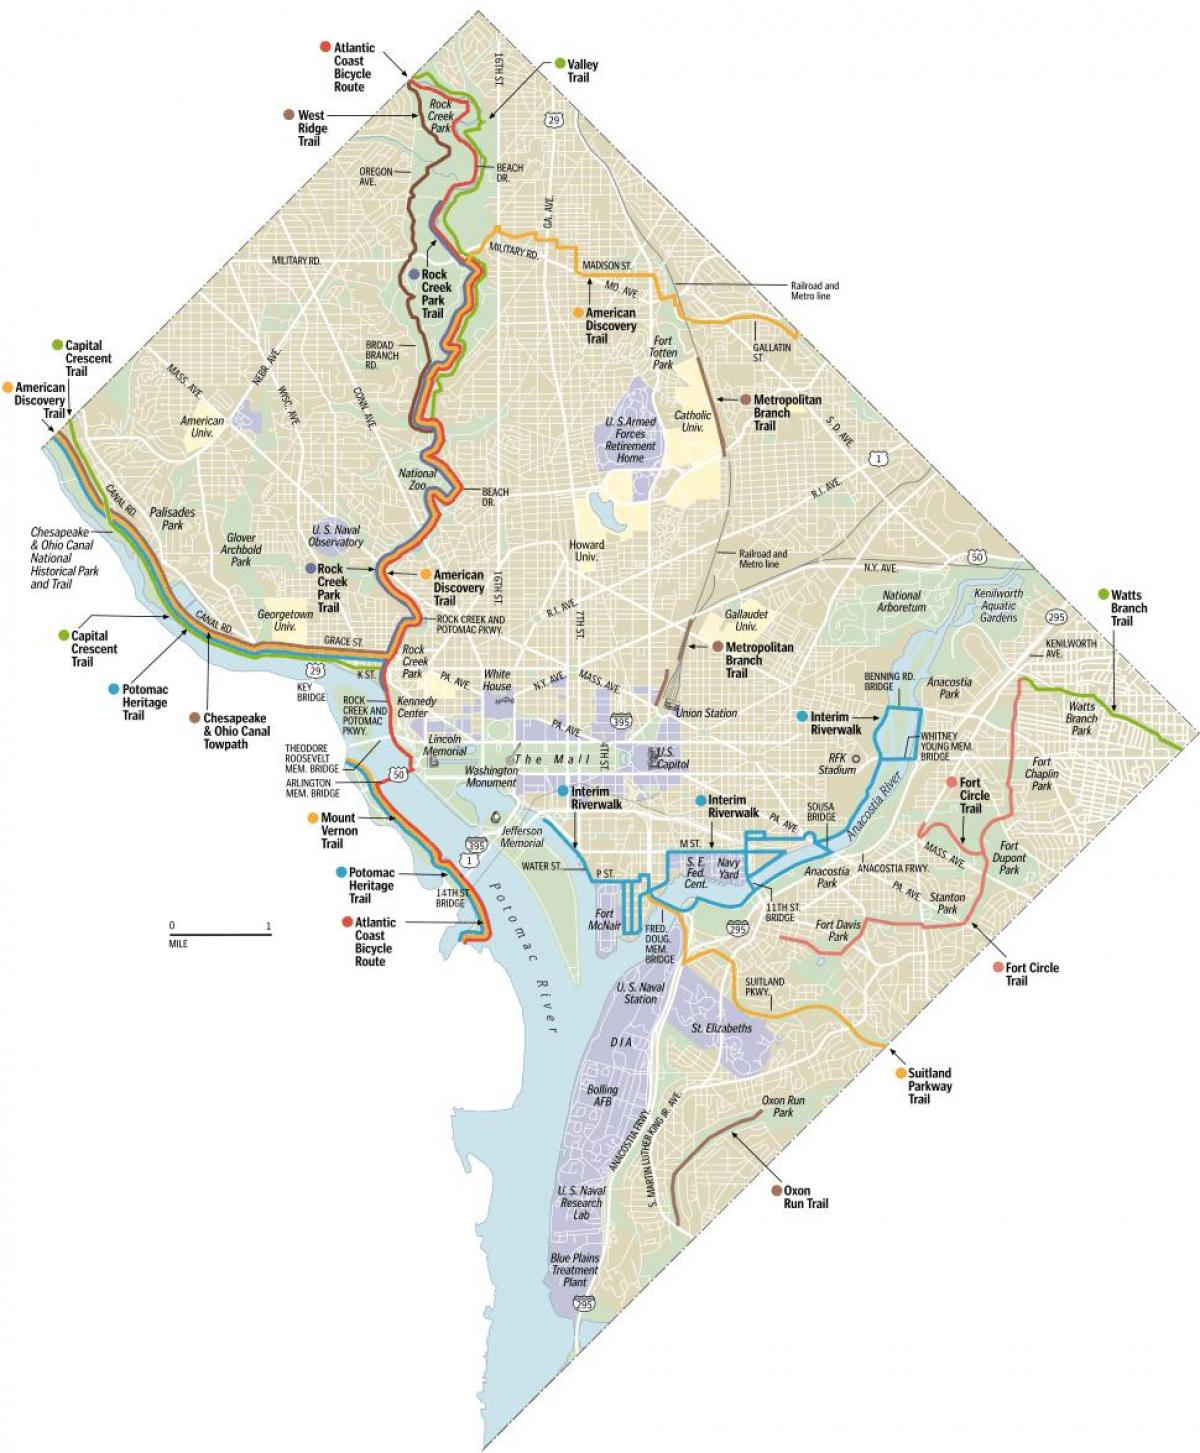 Վաշինգտոնը երթուղիների dc հեծանիվ քարտեզի վրա